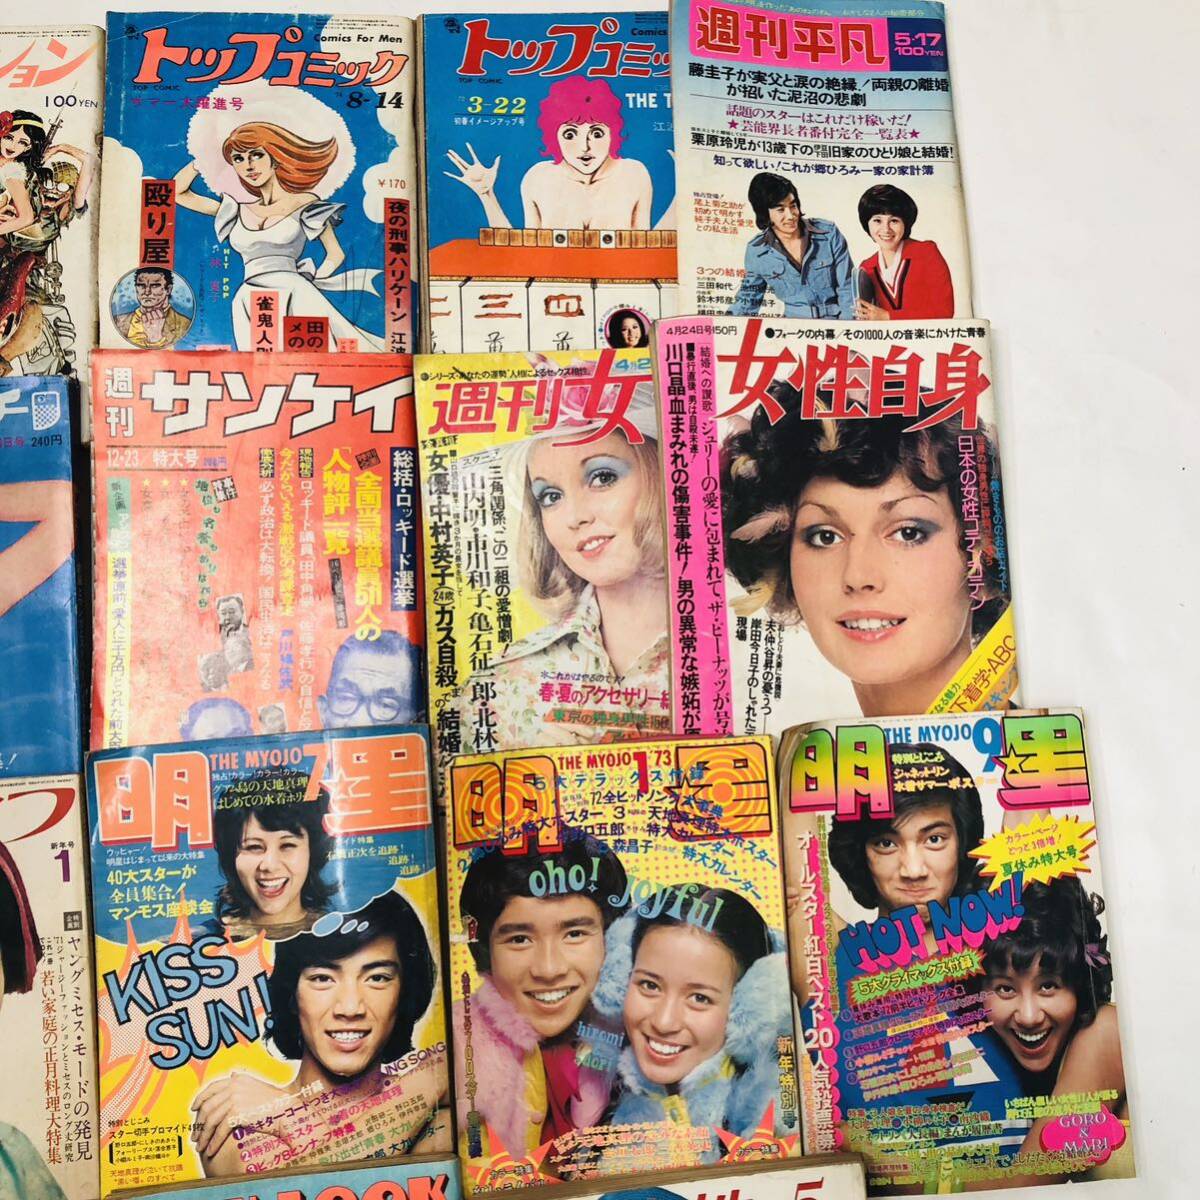 G599* еженедельный журнал Showa Retro журнал 22 шт. не комплект суммировать обычный дырокол Play Boy яркая звезда женщина сам еженедельный женщина 1970 годы 